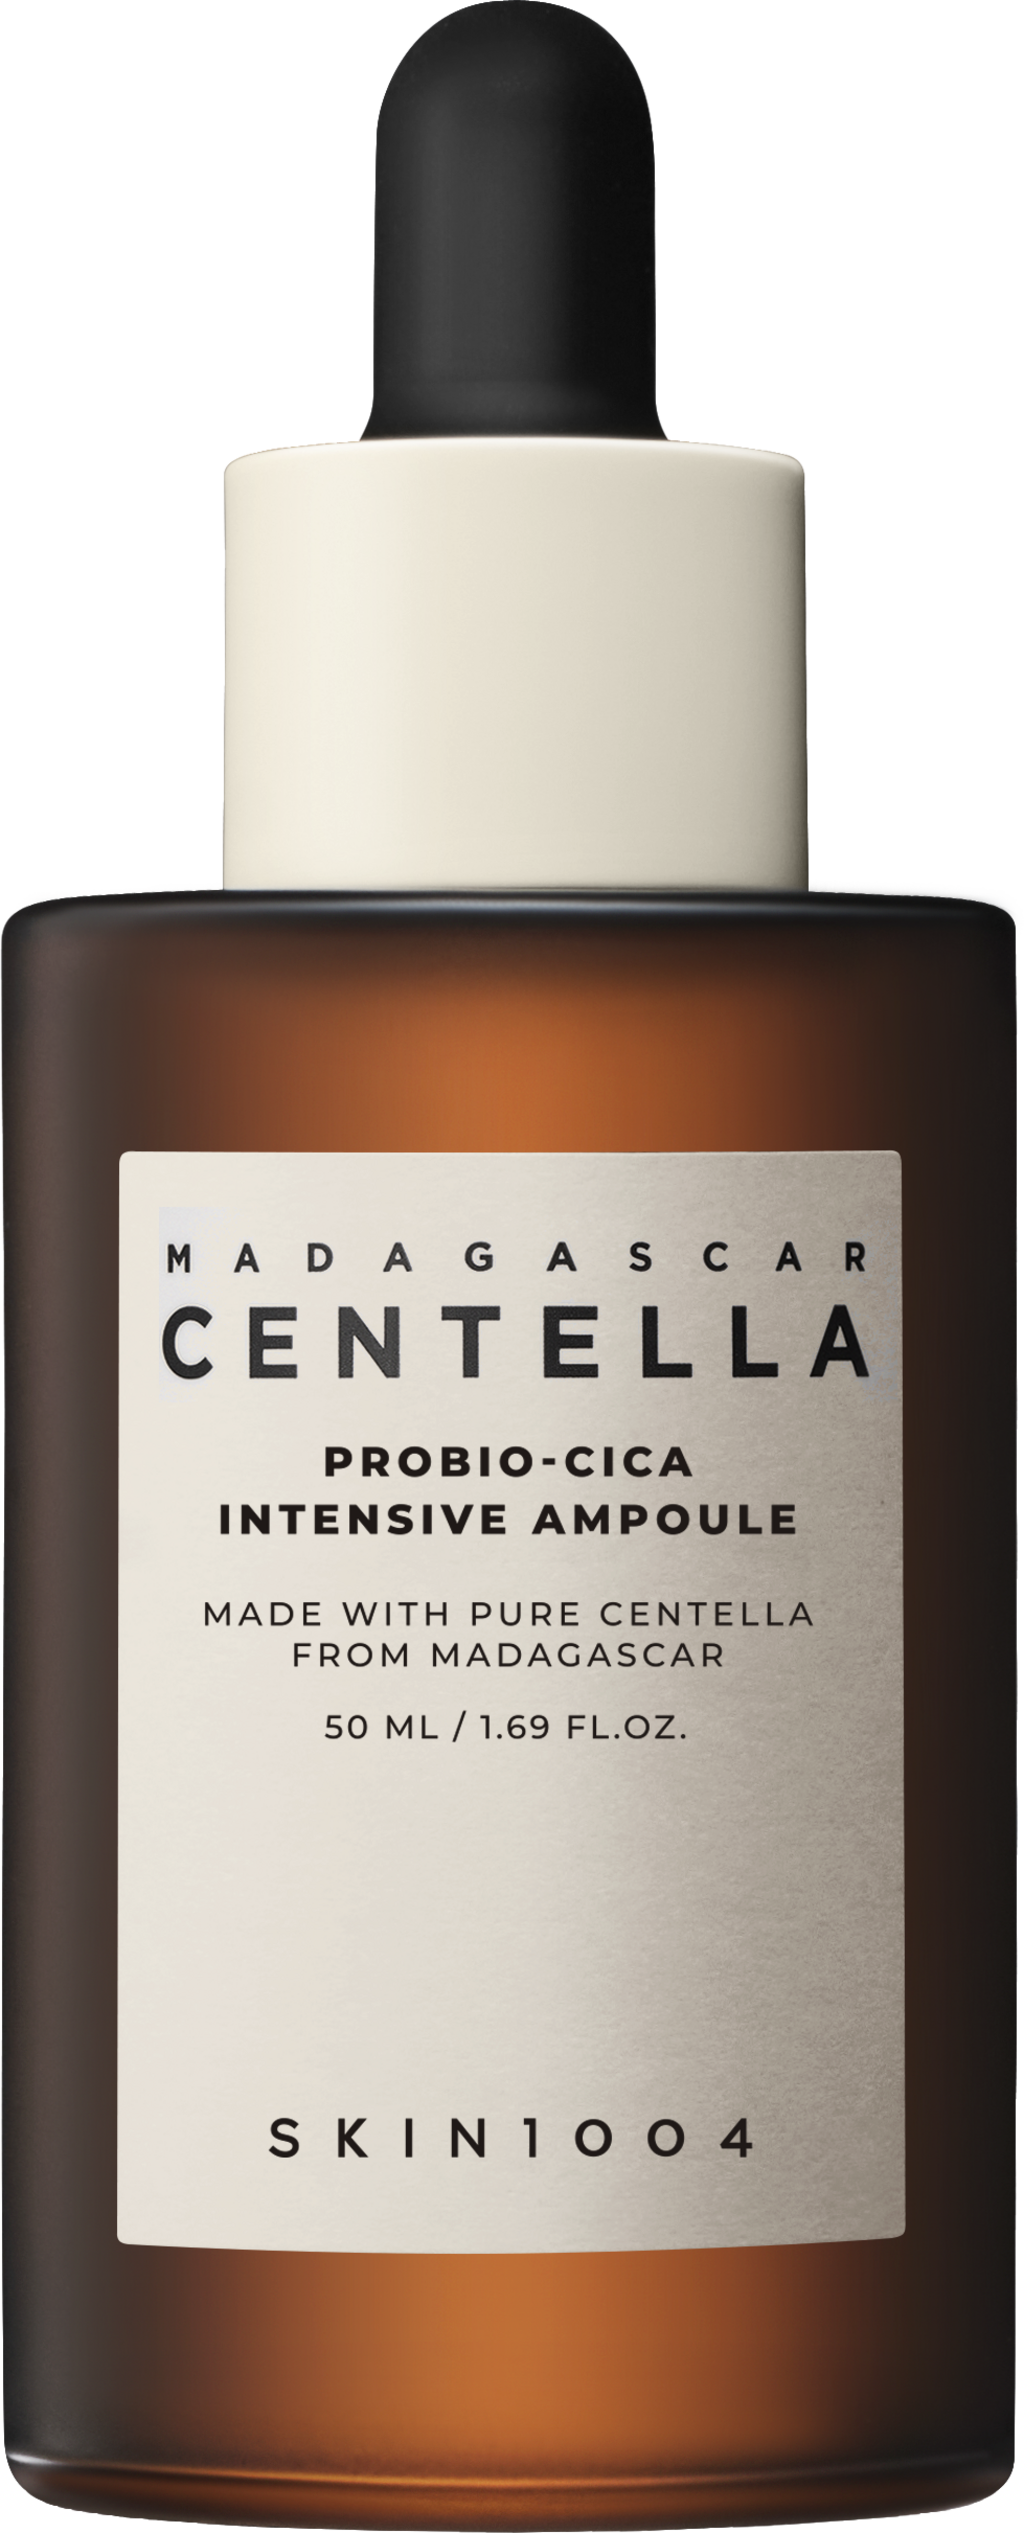 SKIN1004 Madagascar Centella Probio-Cica Intensive Ampoule, 50 ml